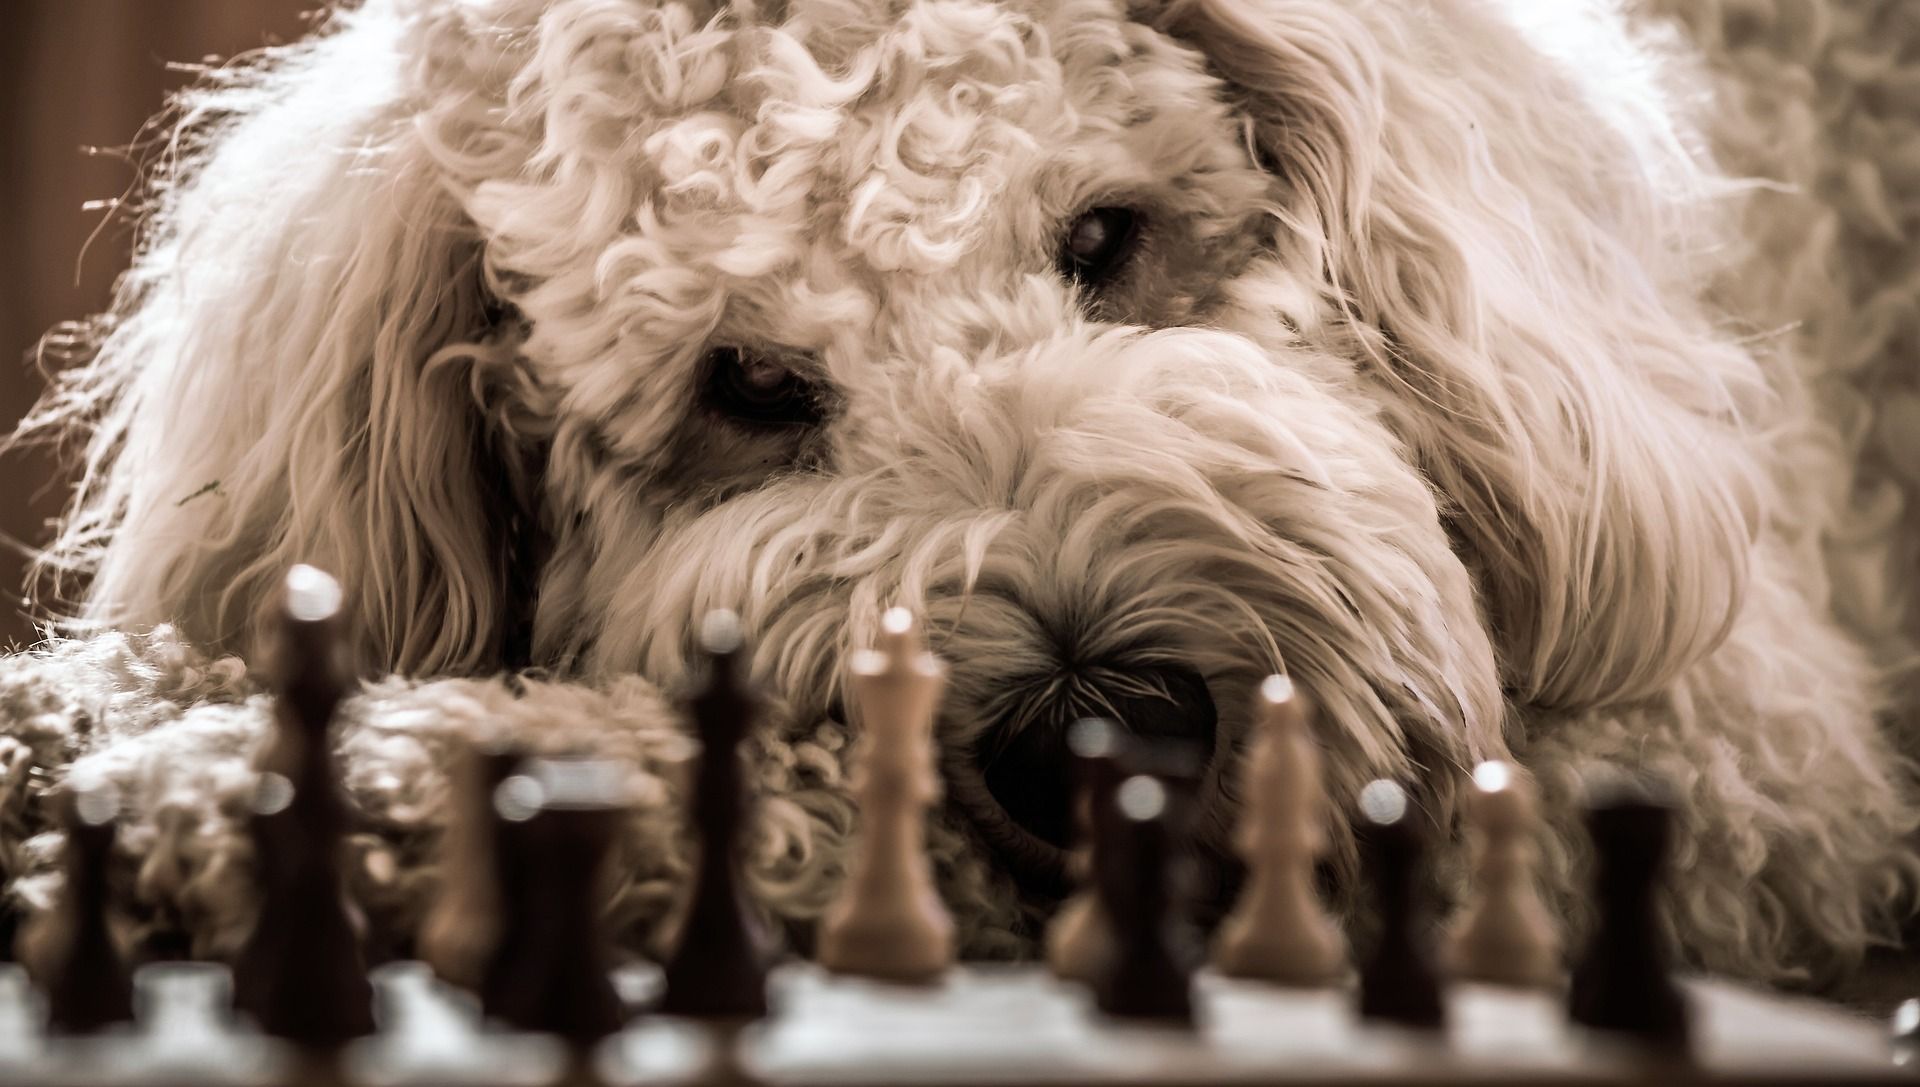 El ajedrez de la vida” – Verdad y Vida